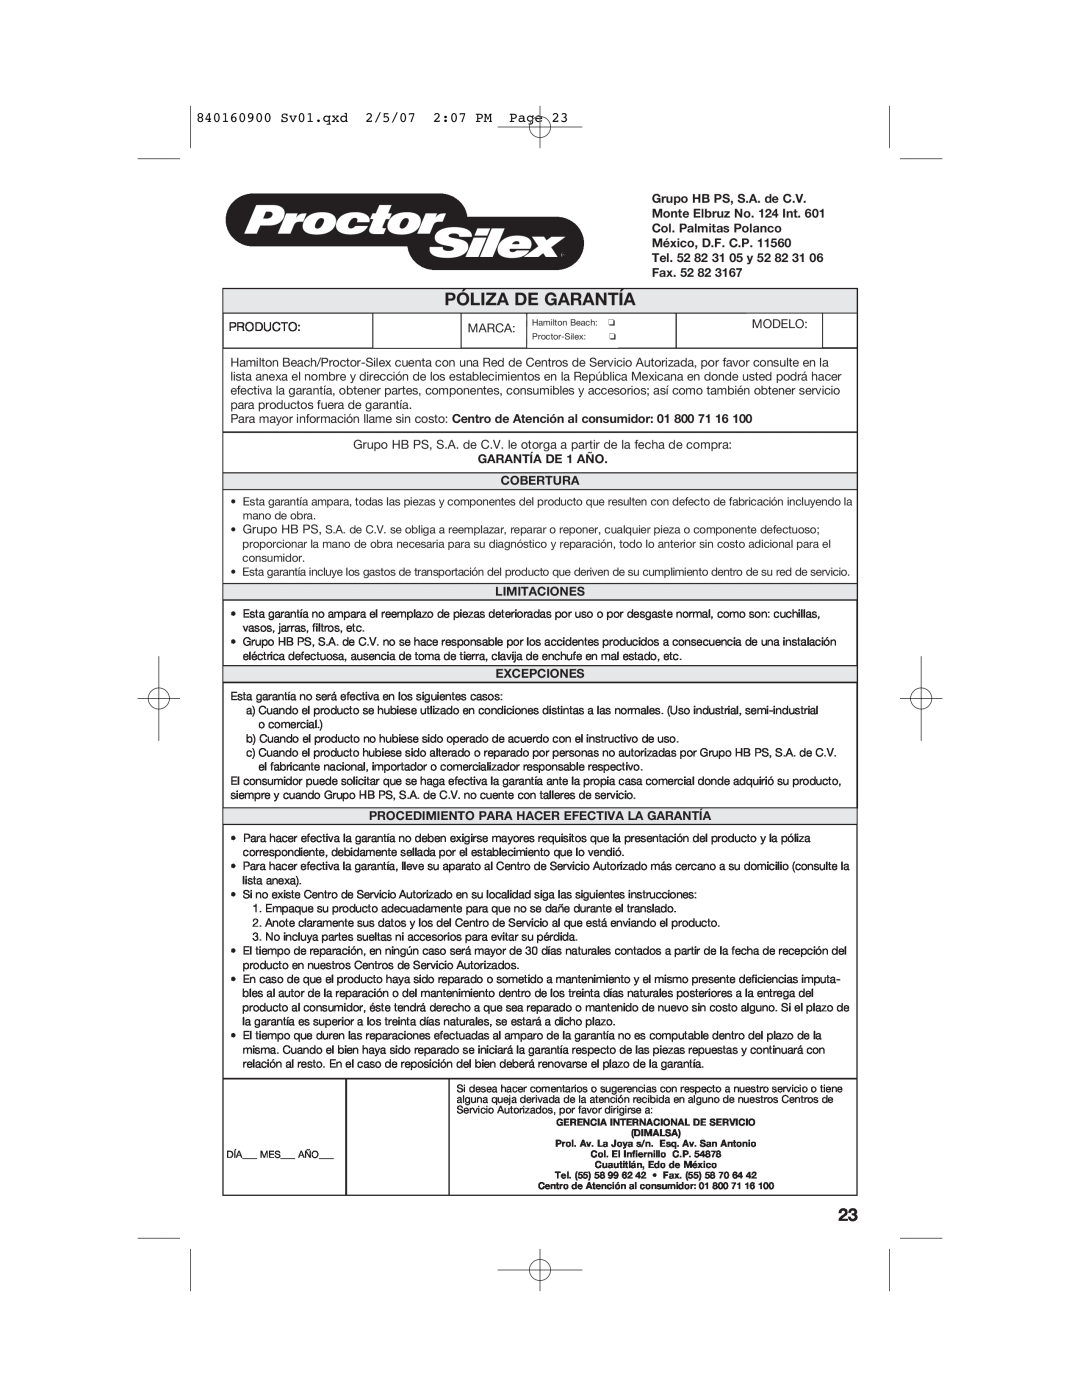 Proctor-Silex Póliza De Garantía, 840160900 Sv01.qxd 2/5/07 207 PM Page, Fax, GARANTÍA DE 1 AÑO COBERTURA, Limitaciones 